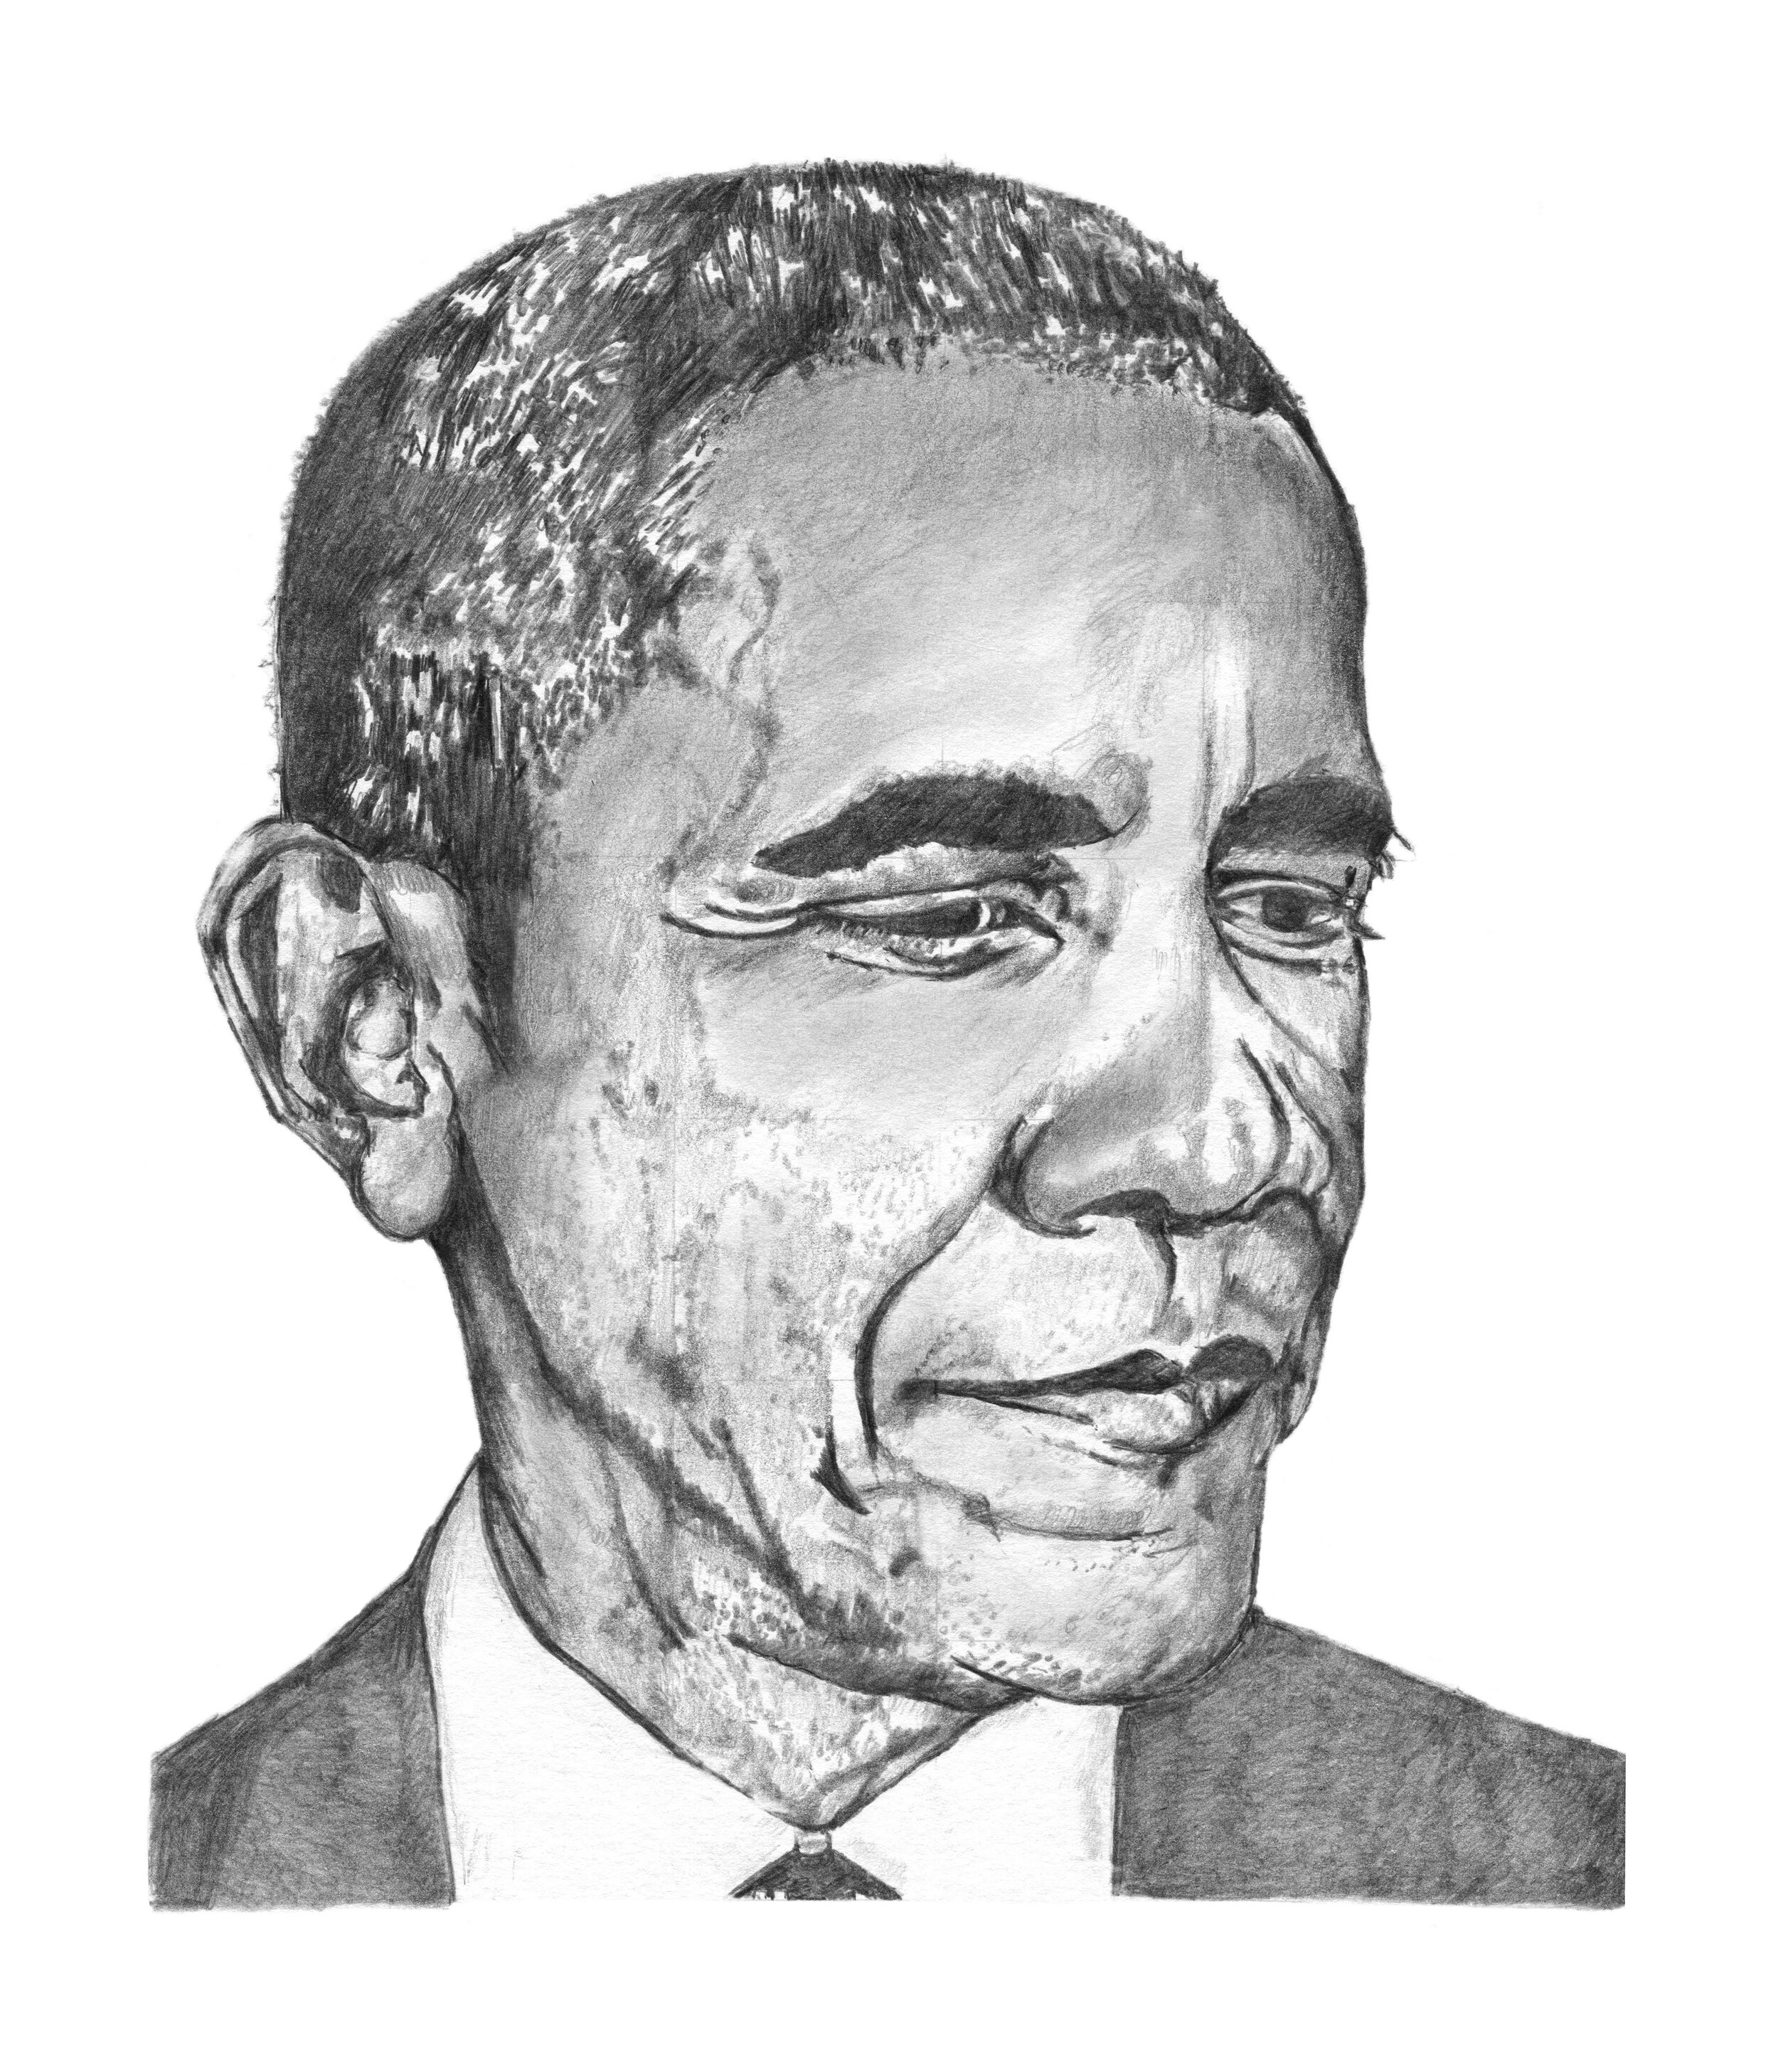 Obama II Pencil drawing by Paul Stowe  Artfinder